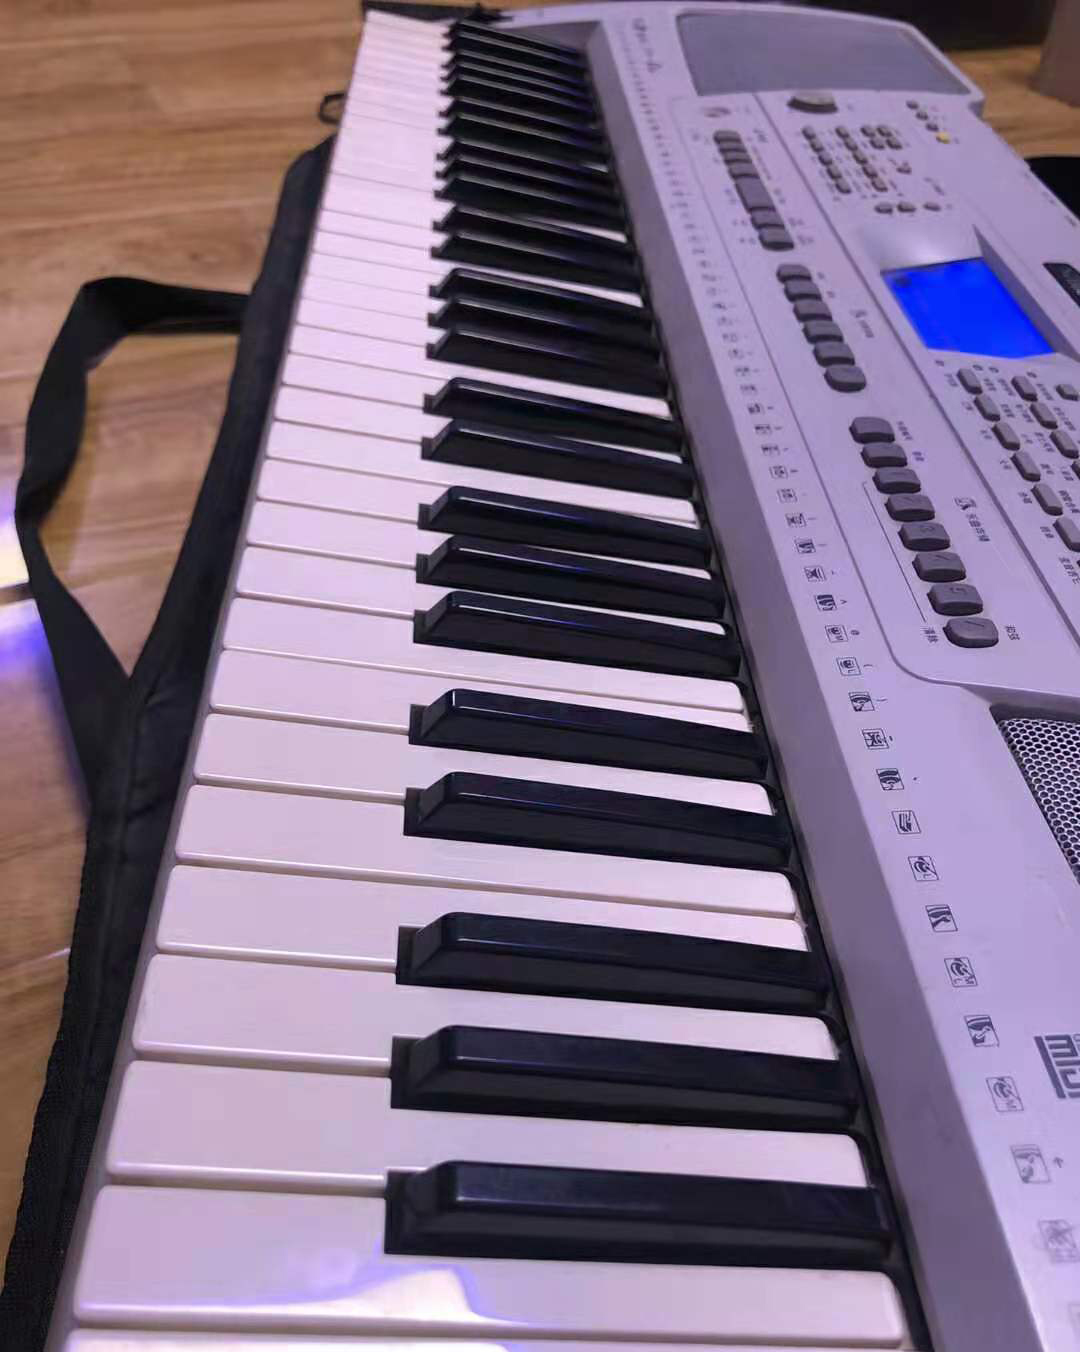 原装现货 八九成新雅马哈KB320二手电子琴 61键力度键 专业考级琴